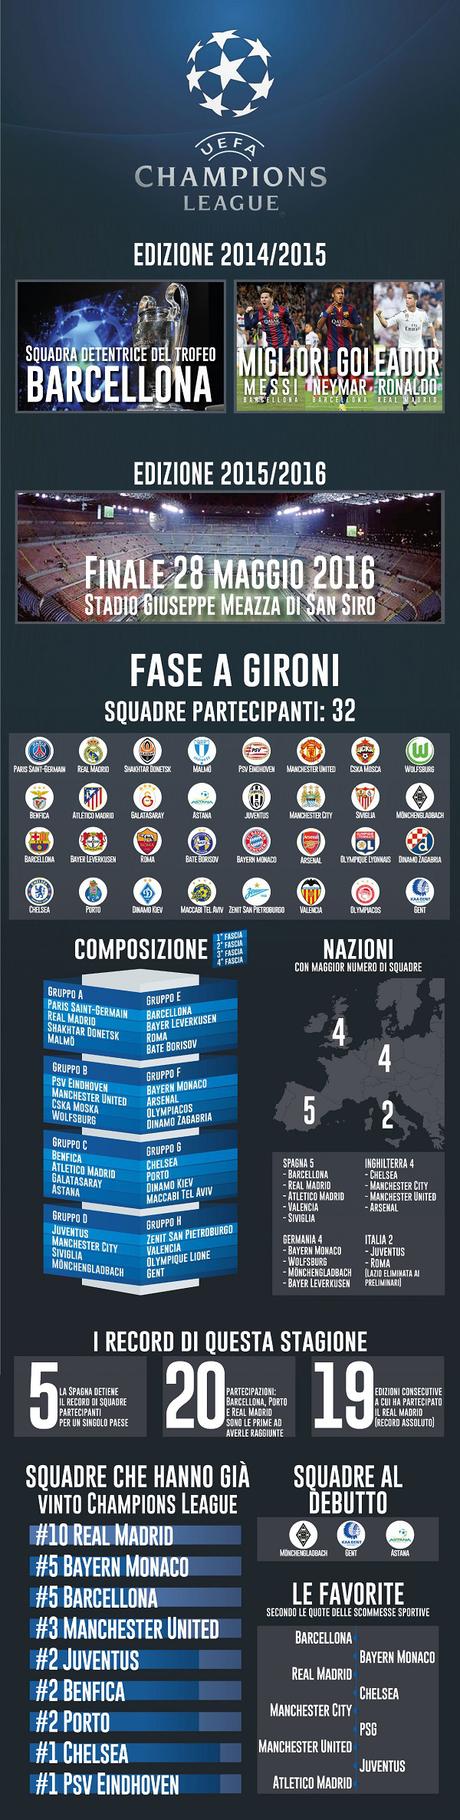 Riparte la Champions League: ecco tutti i dati della stagione (infografica)